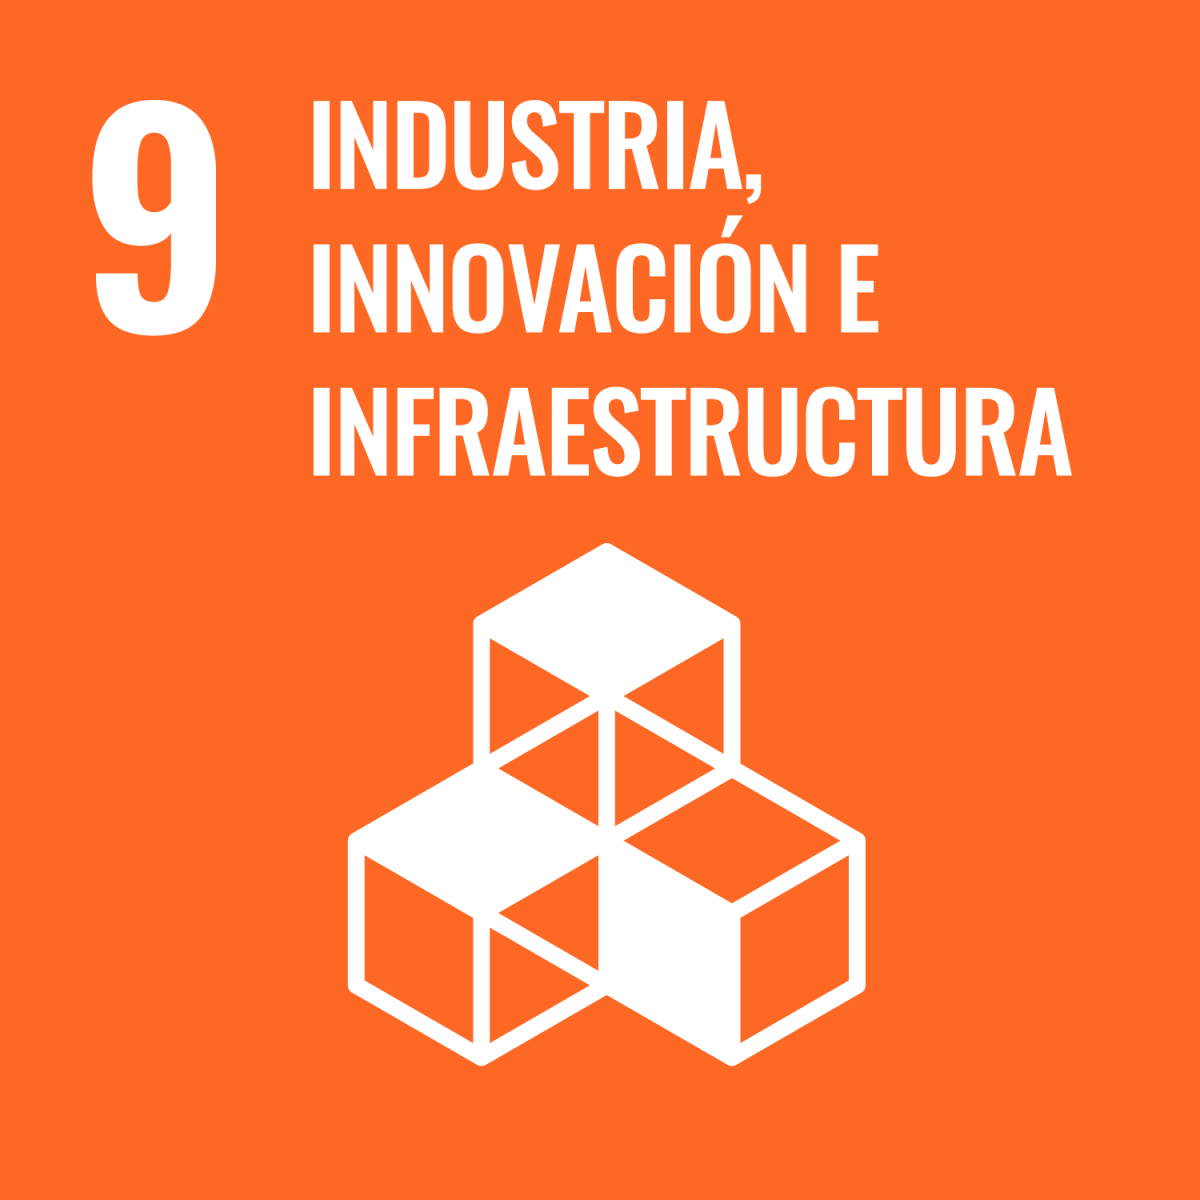 Industria, innovación e infraestructuras